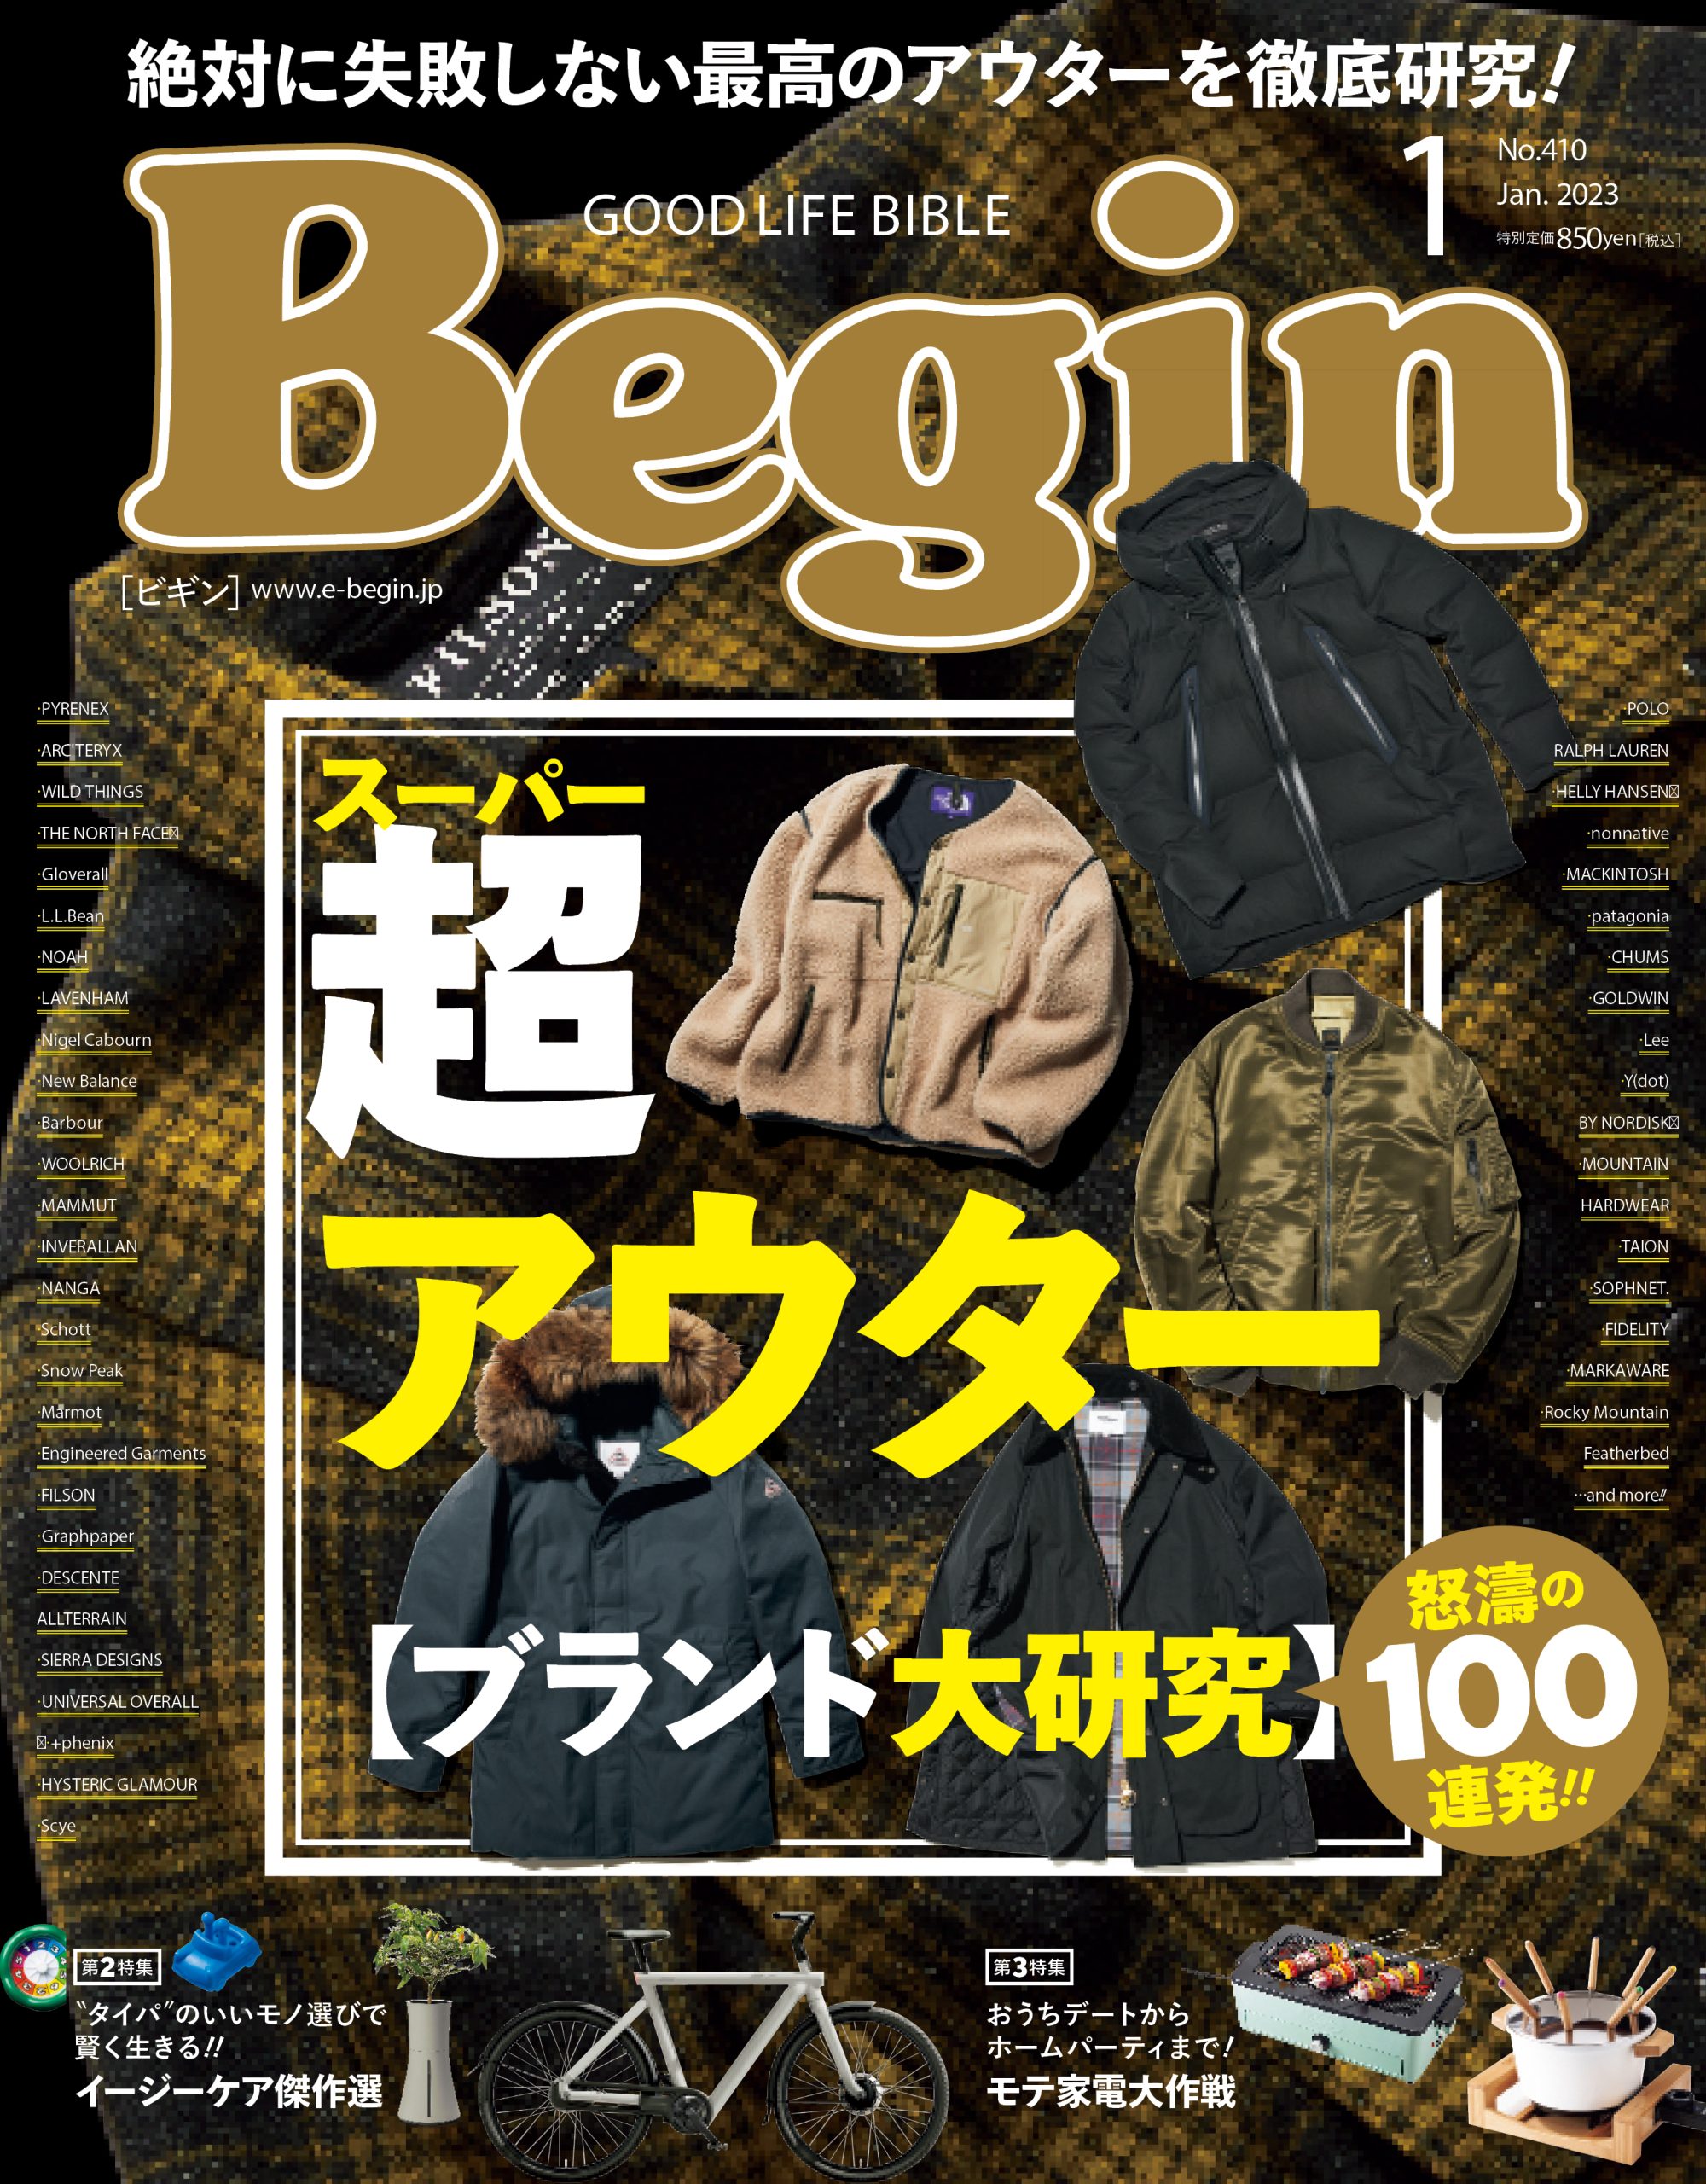 【メディア掲載のお知らせ】2022/11/16発売の「Begin1月号」にHURONリストバンドが掲載されています！